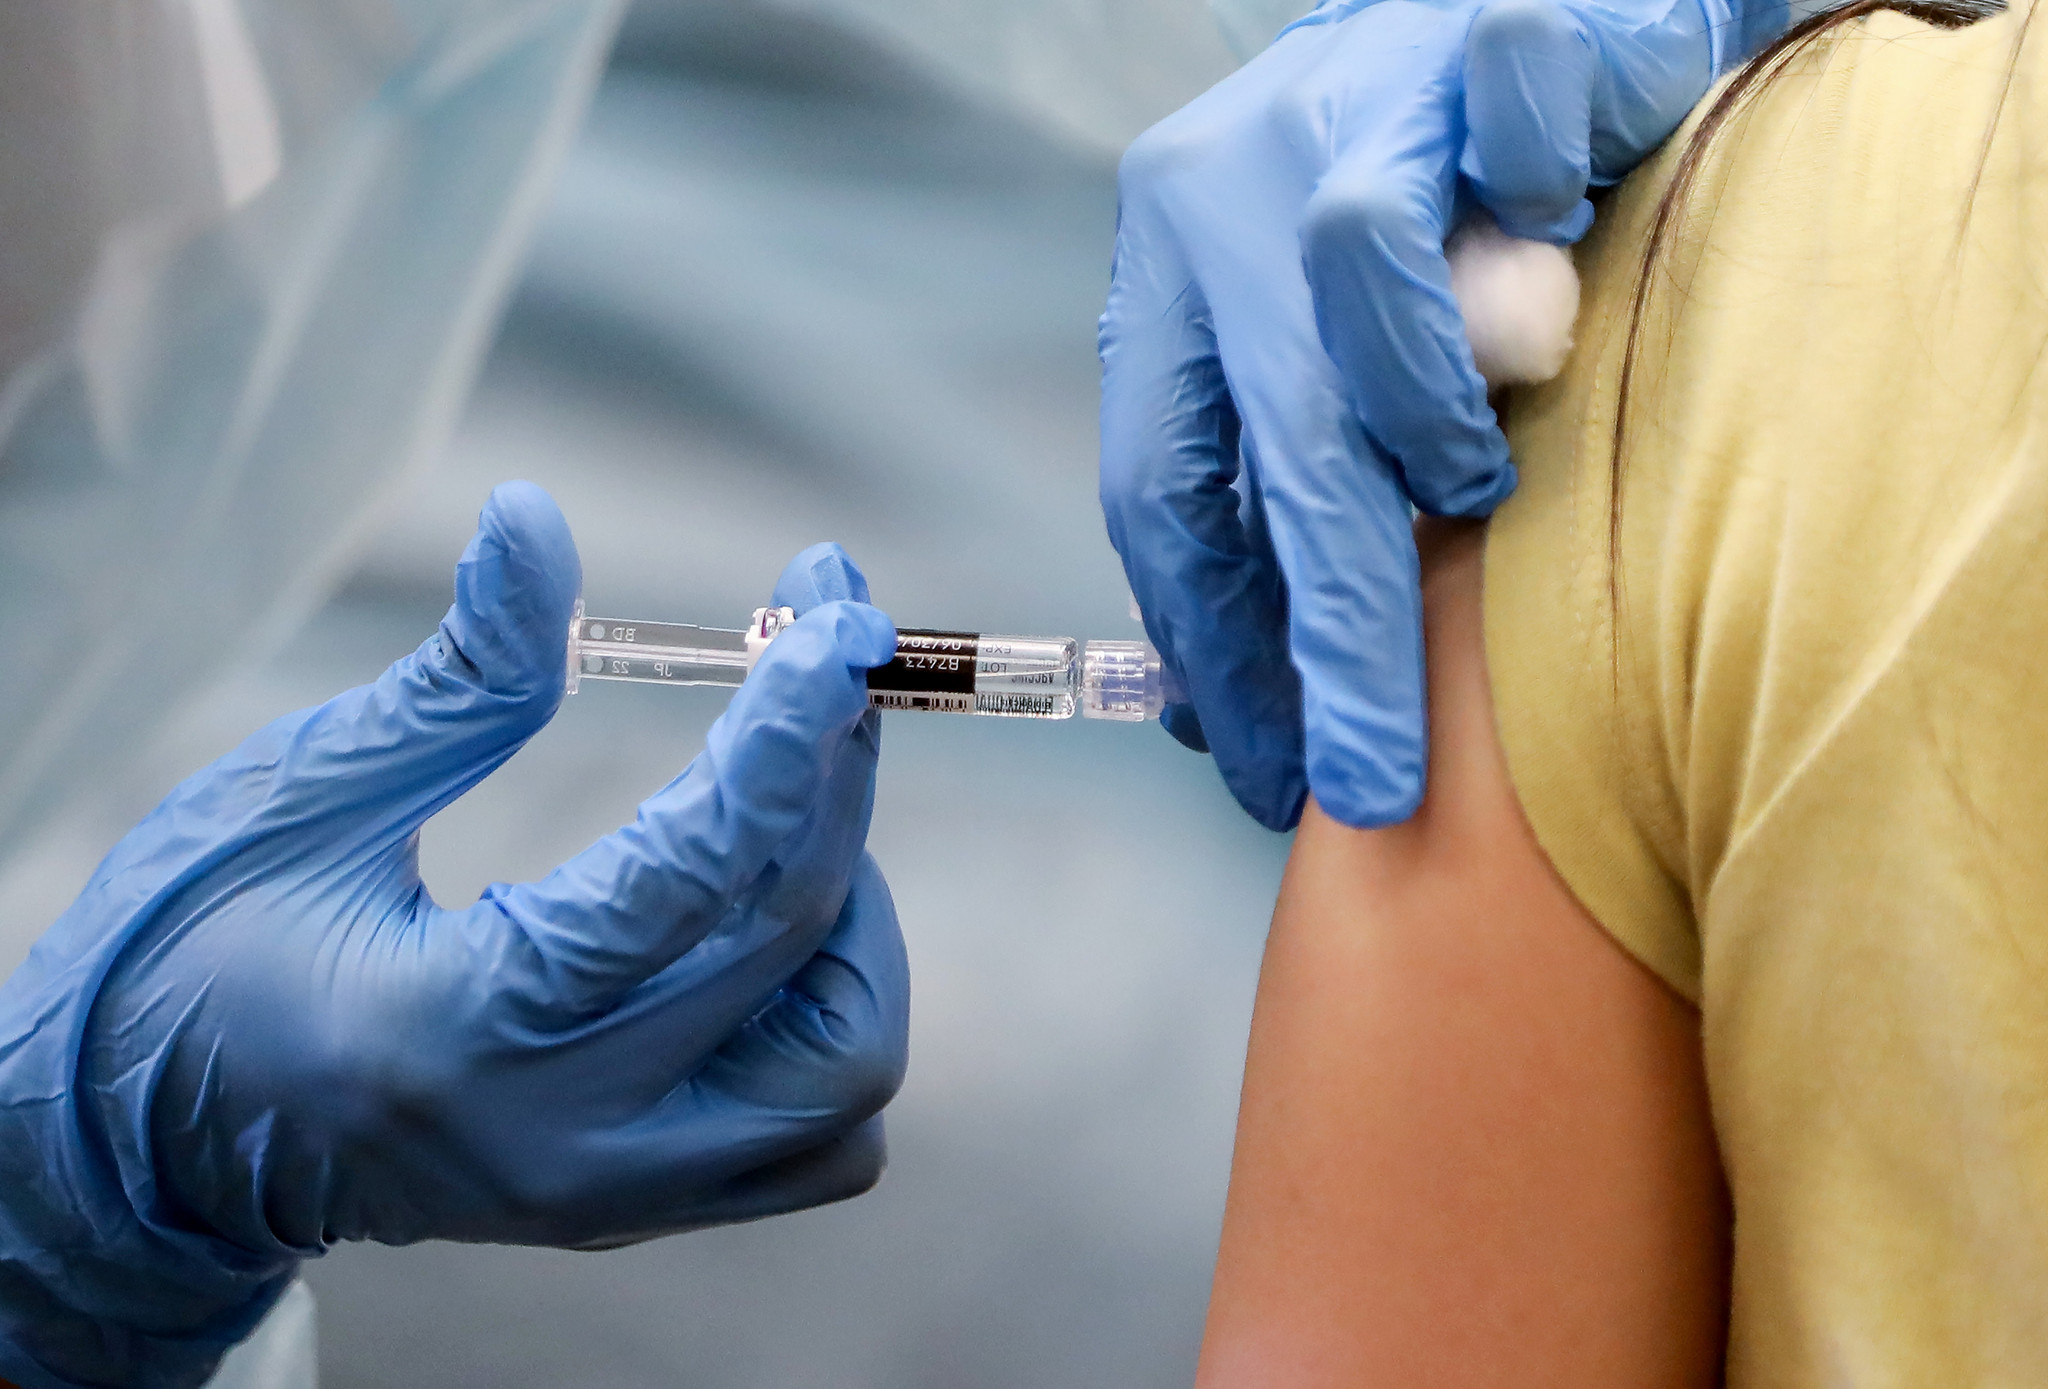 ACTUALIDADE – Coronavírus. Segunda fase de vacinação incide em pessoas